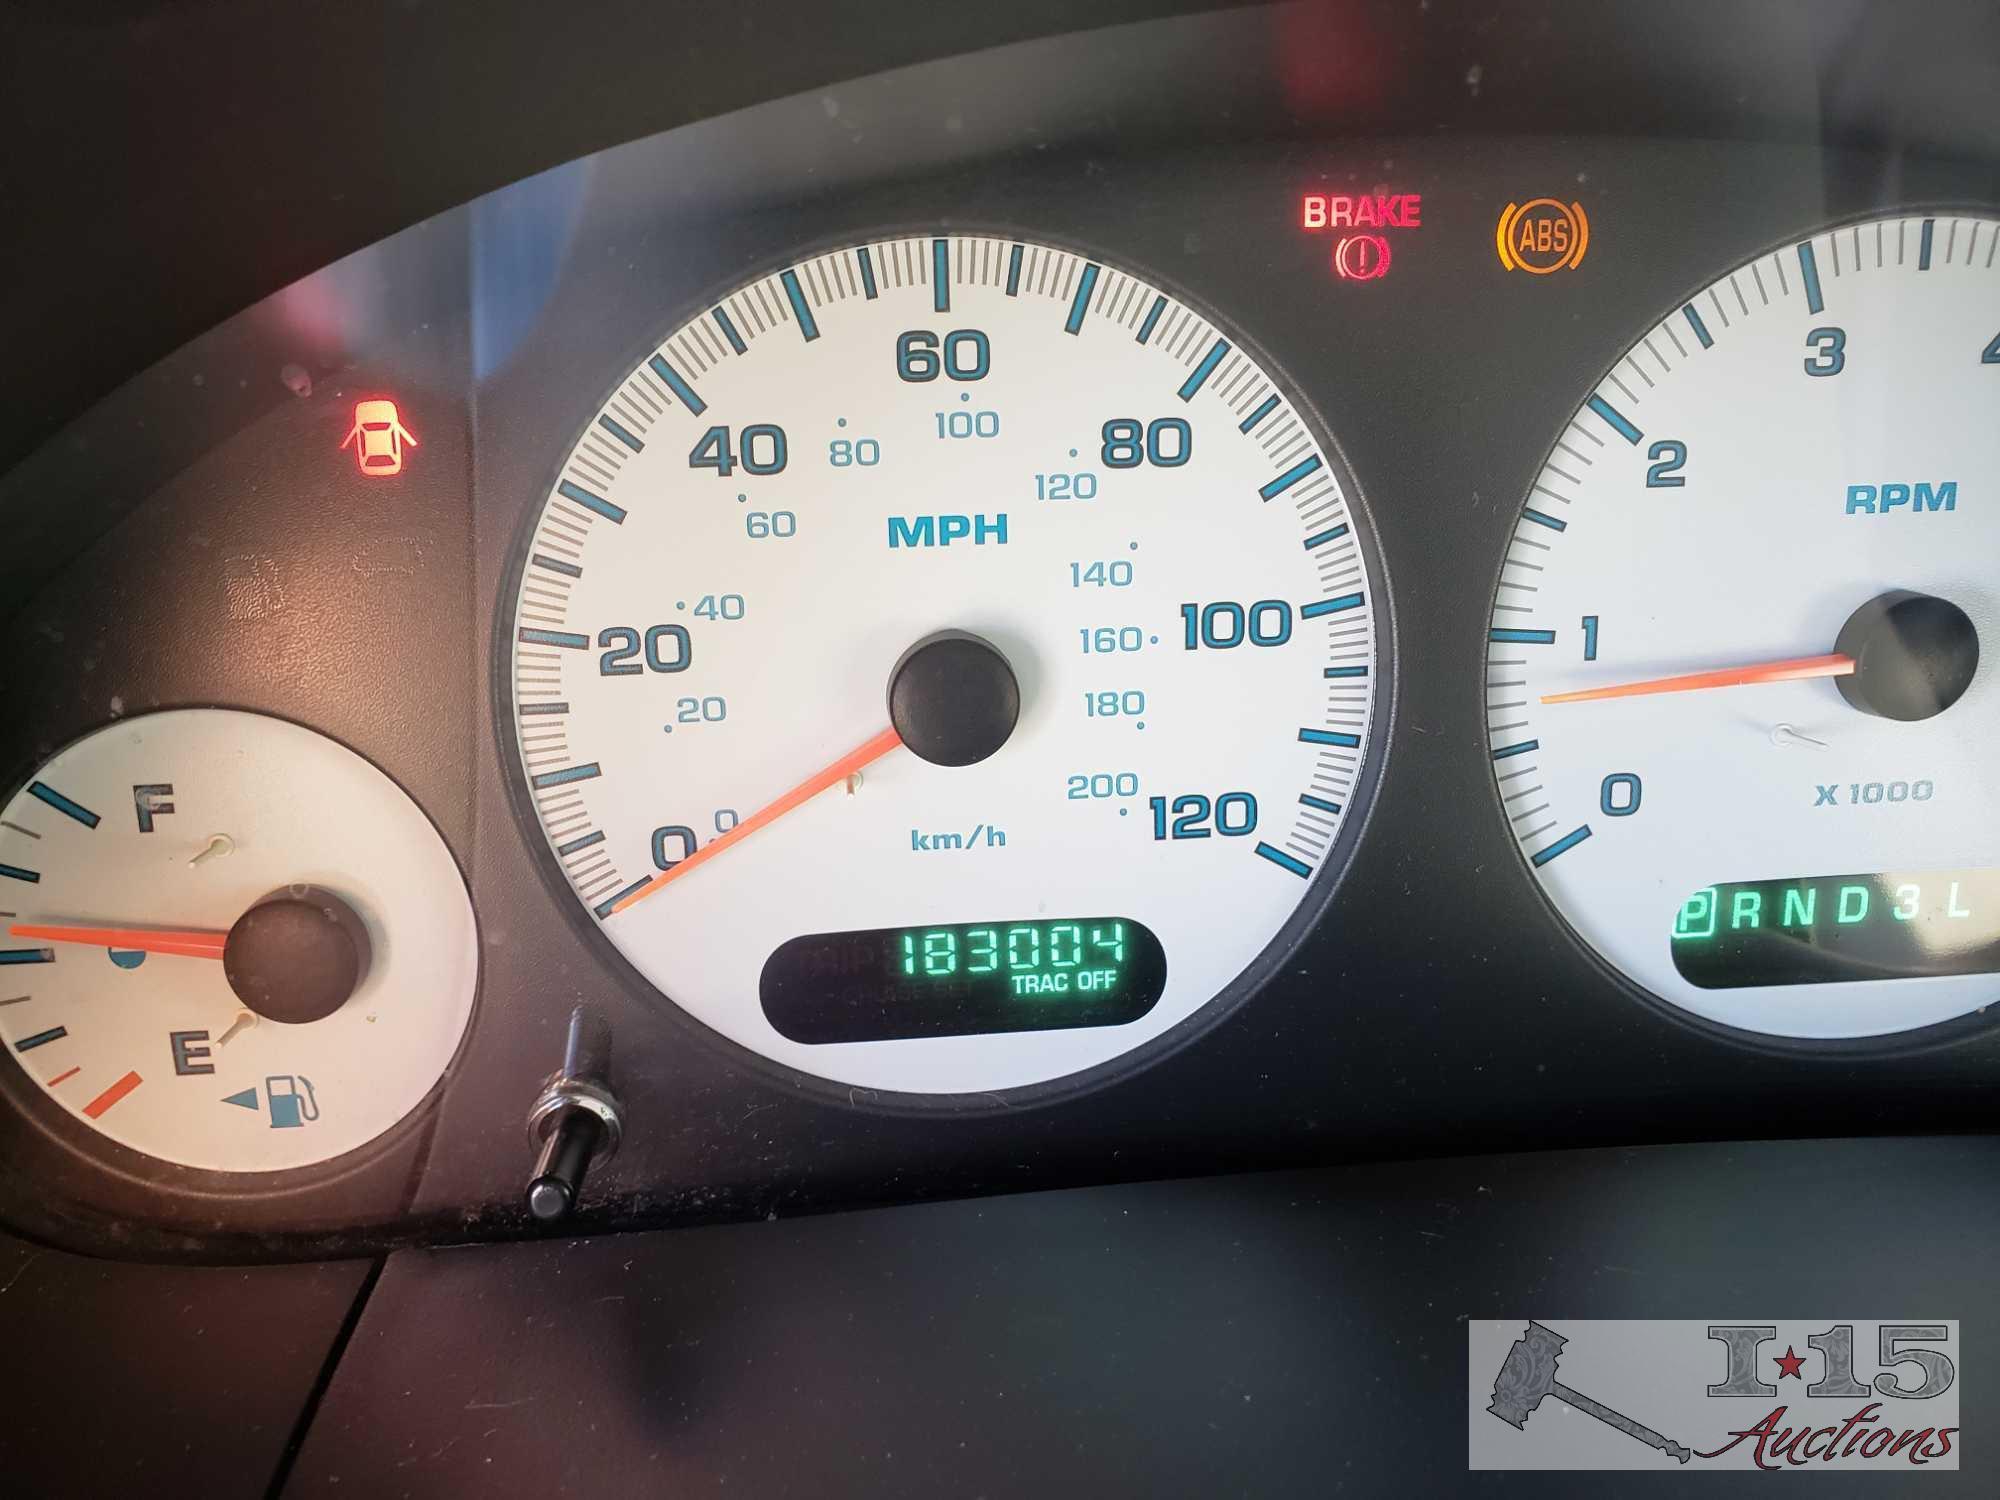 2002 Dodge Caravan Tan (Current Smog), CLEAN AUTO REPORT!!!